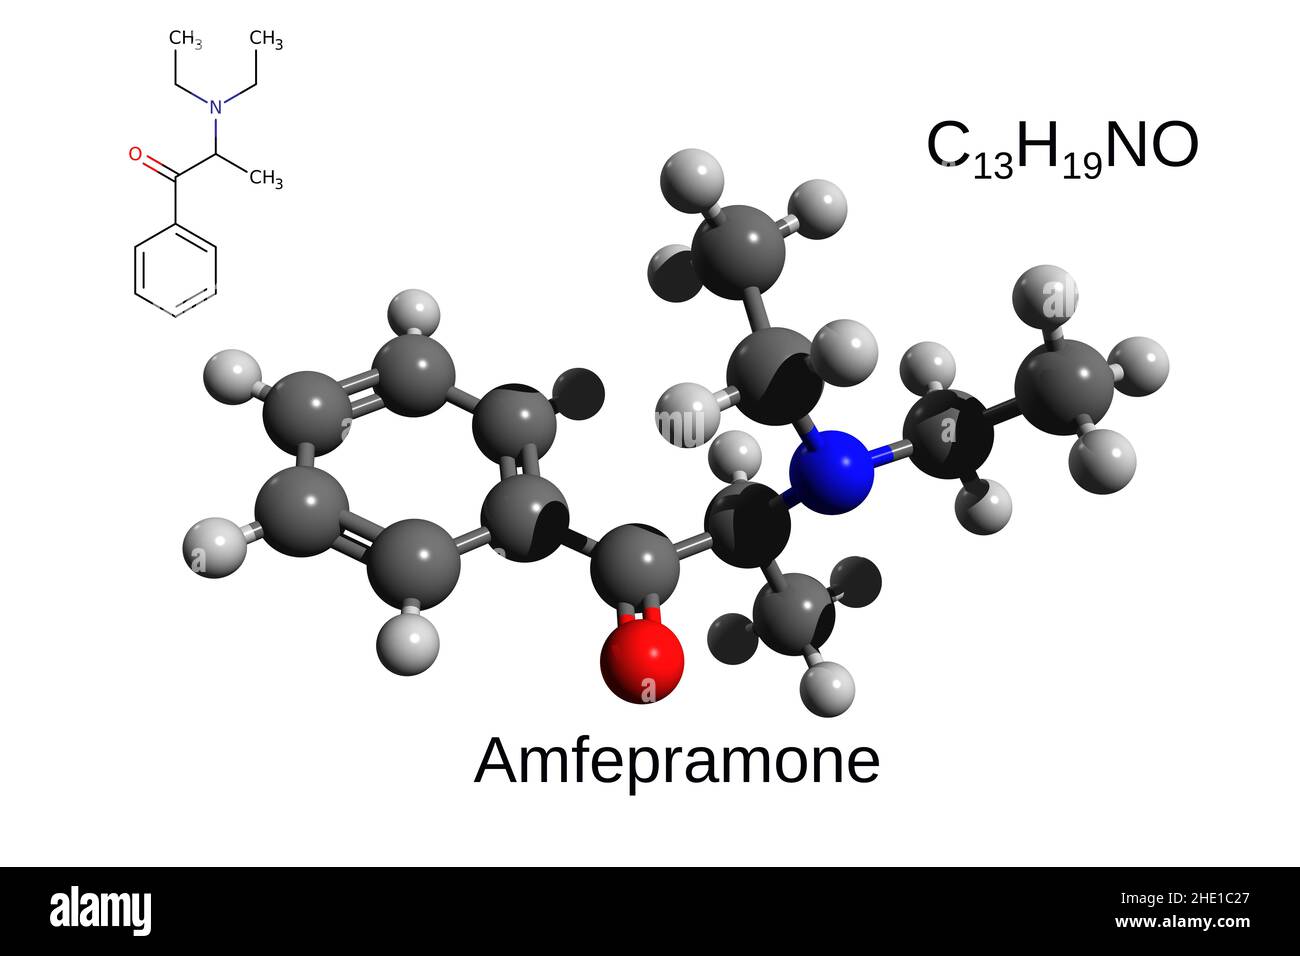 Chemische Formel, Strukturformel und 3D Ball-and-Stick-Modell des Stimulans Amfepramon, weißer Hintergrund Stockfoto